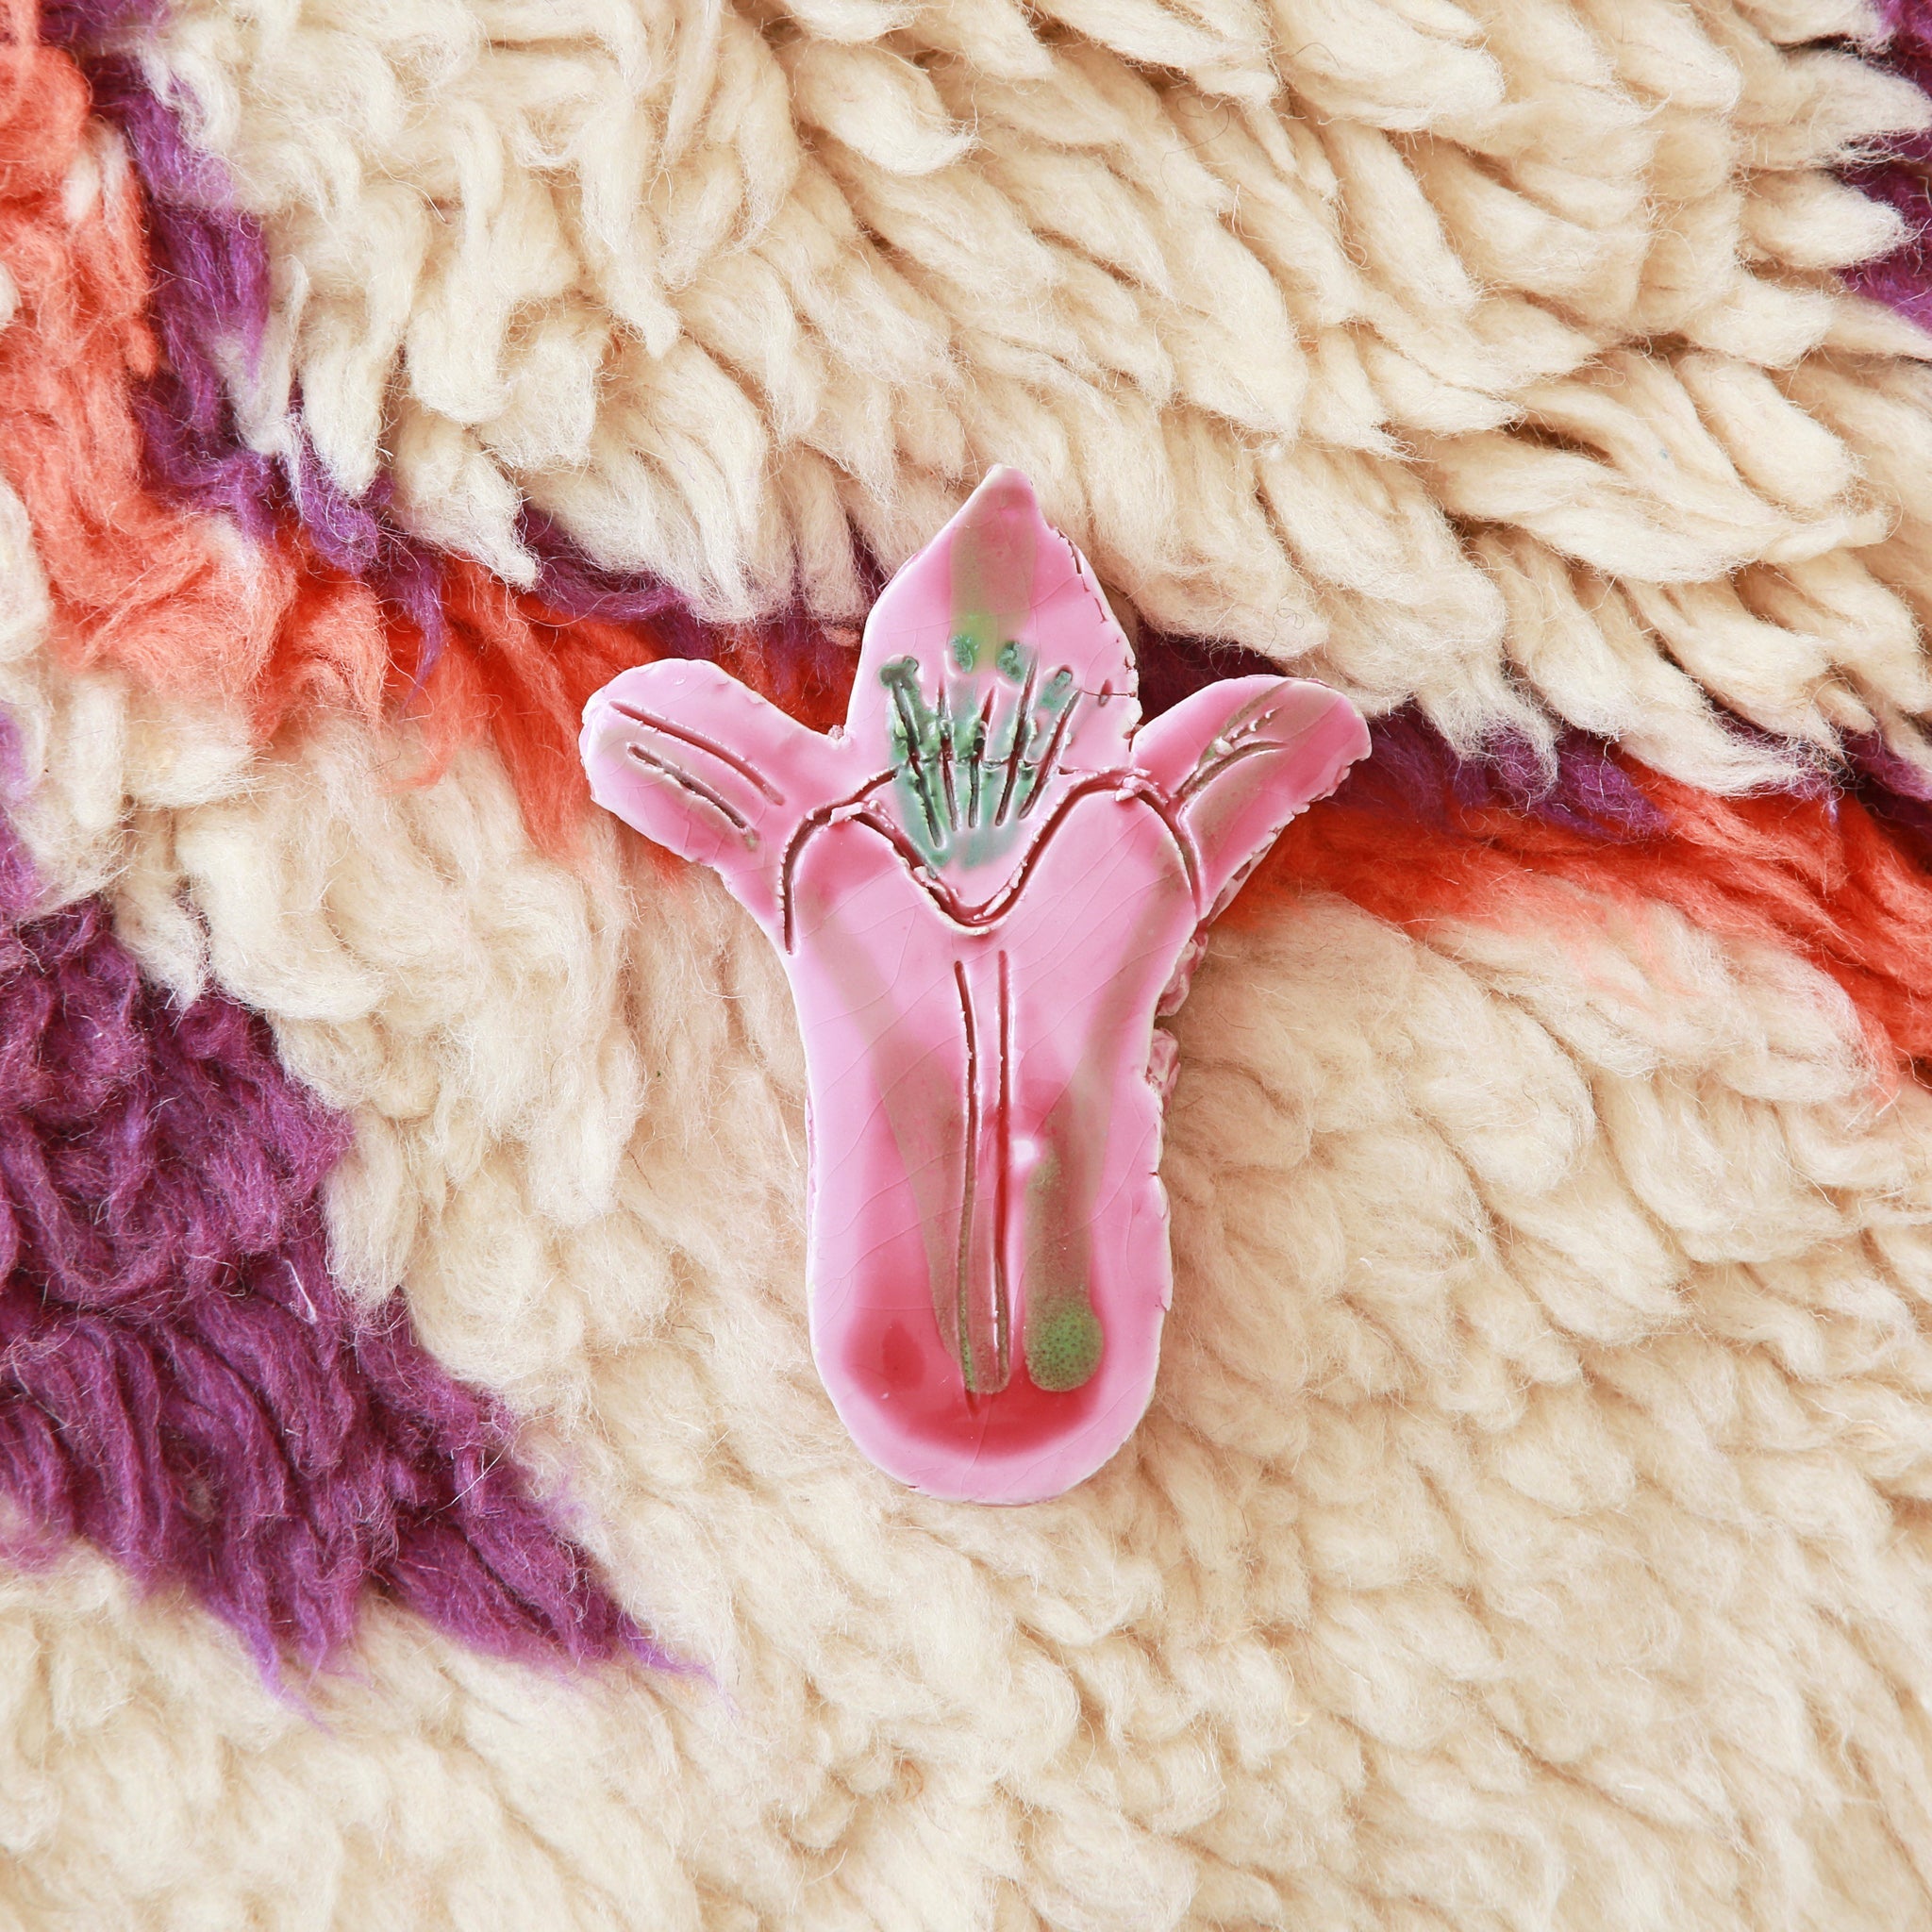 fiore rosa realizzato in ceramica appossiato su un tappeto di lana bianca e con accenni di viola e arancione